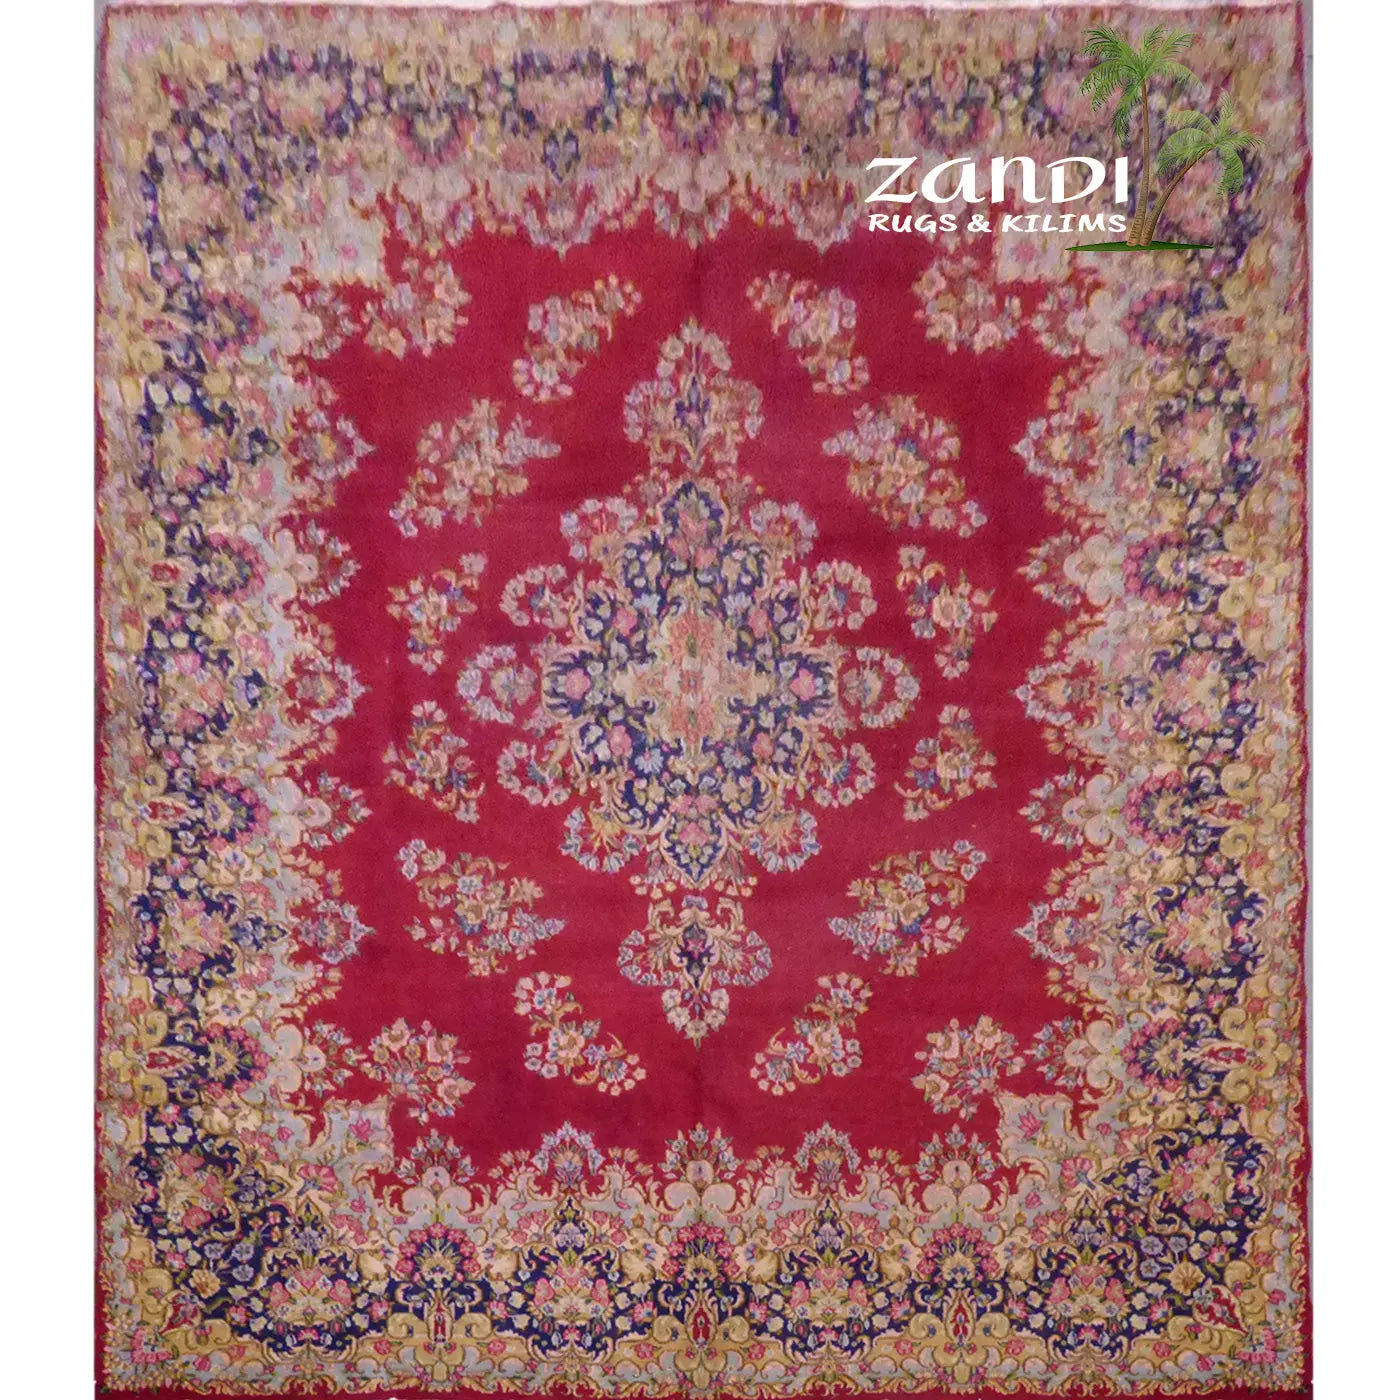 irani rugs